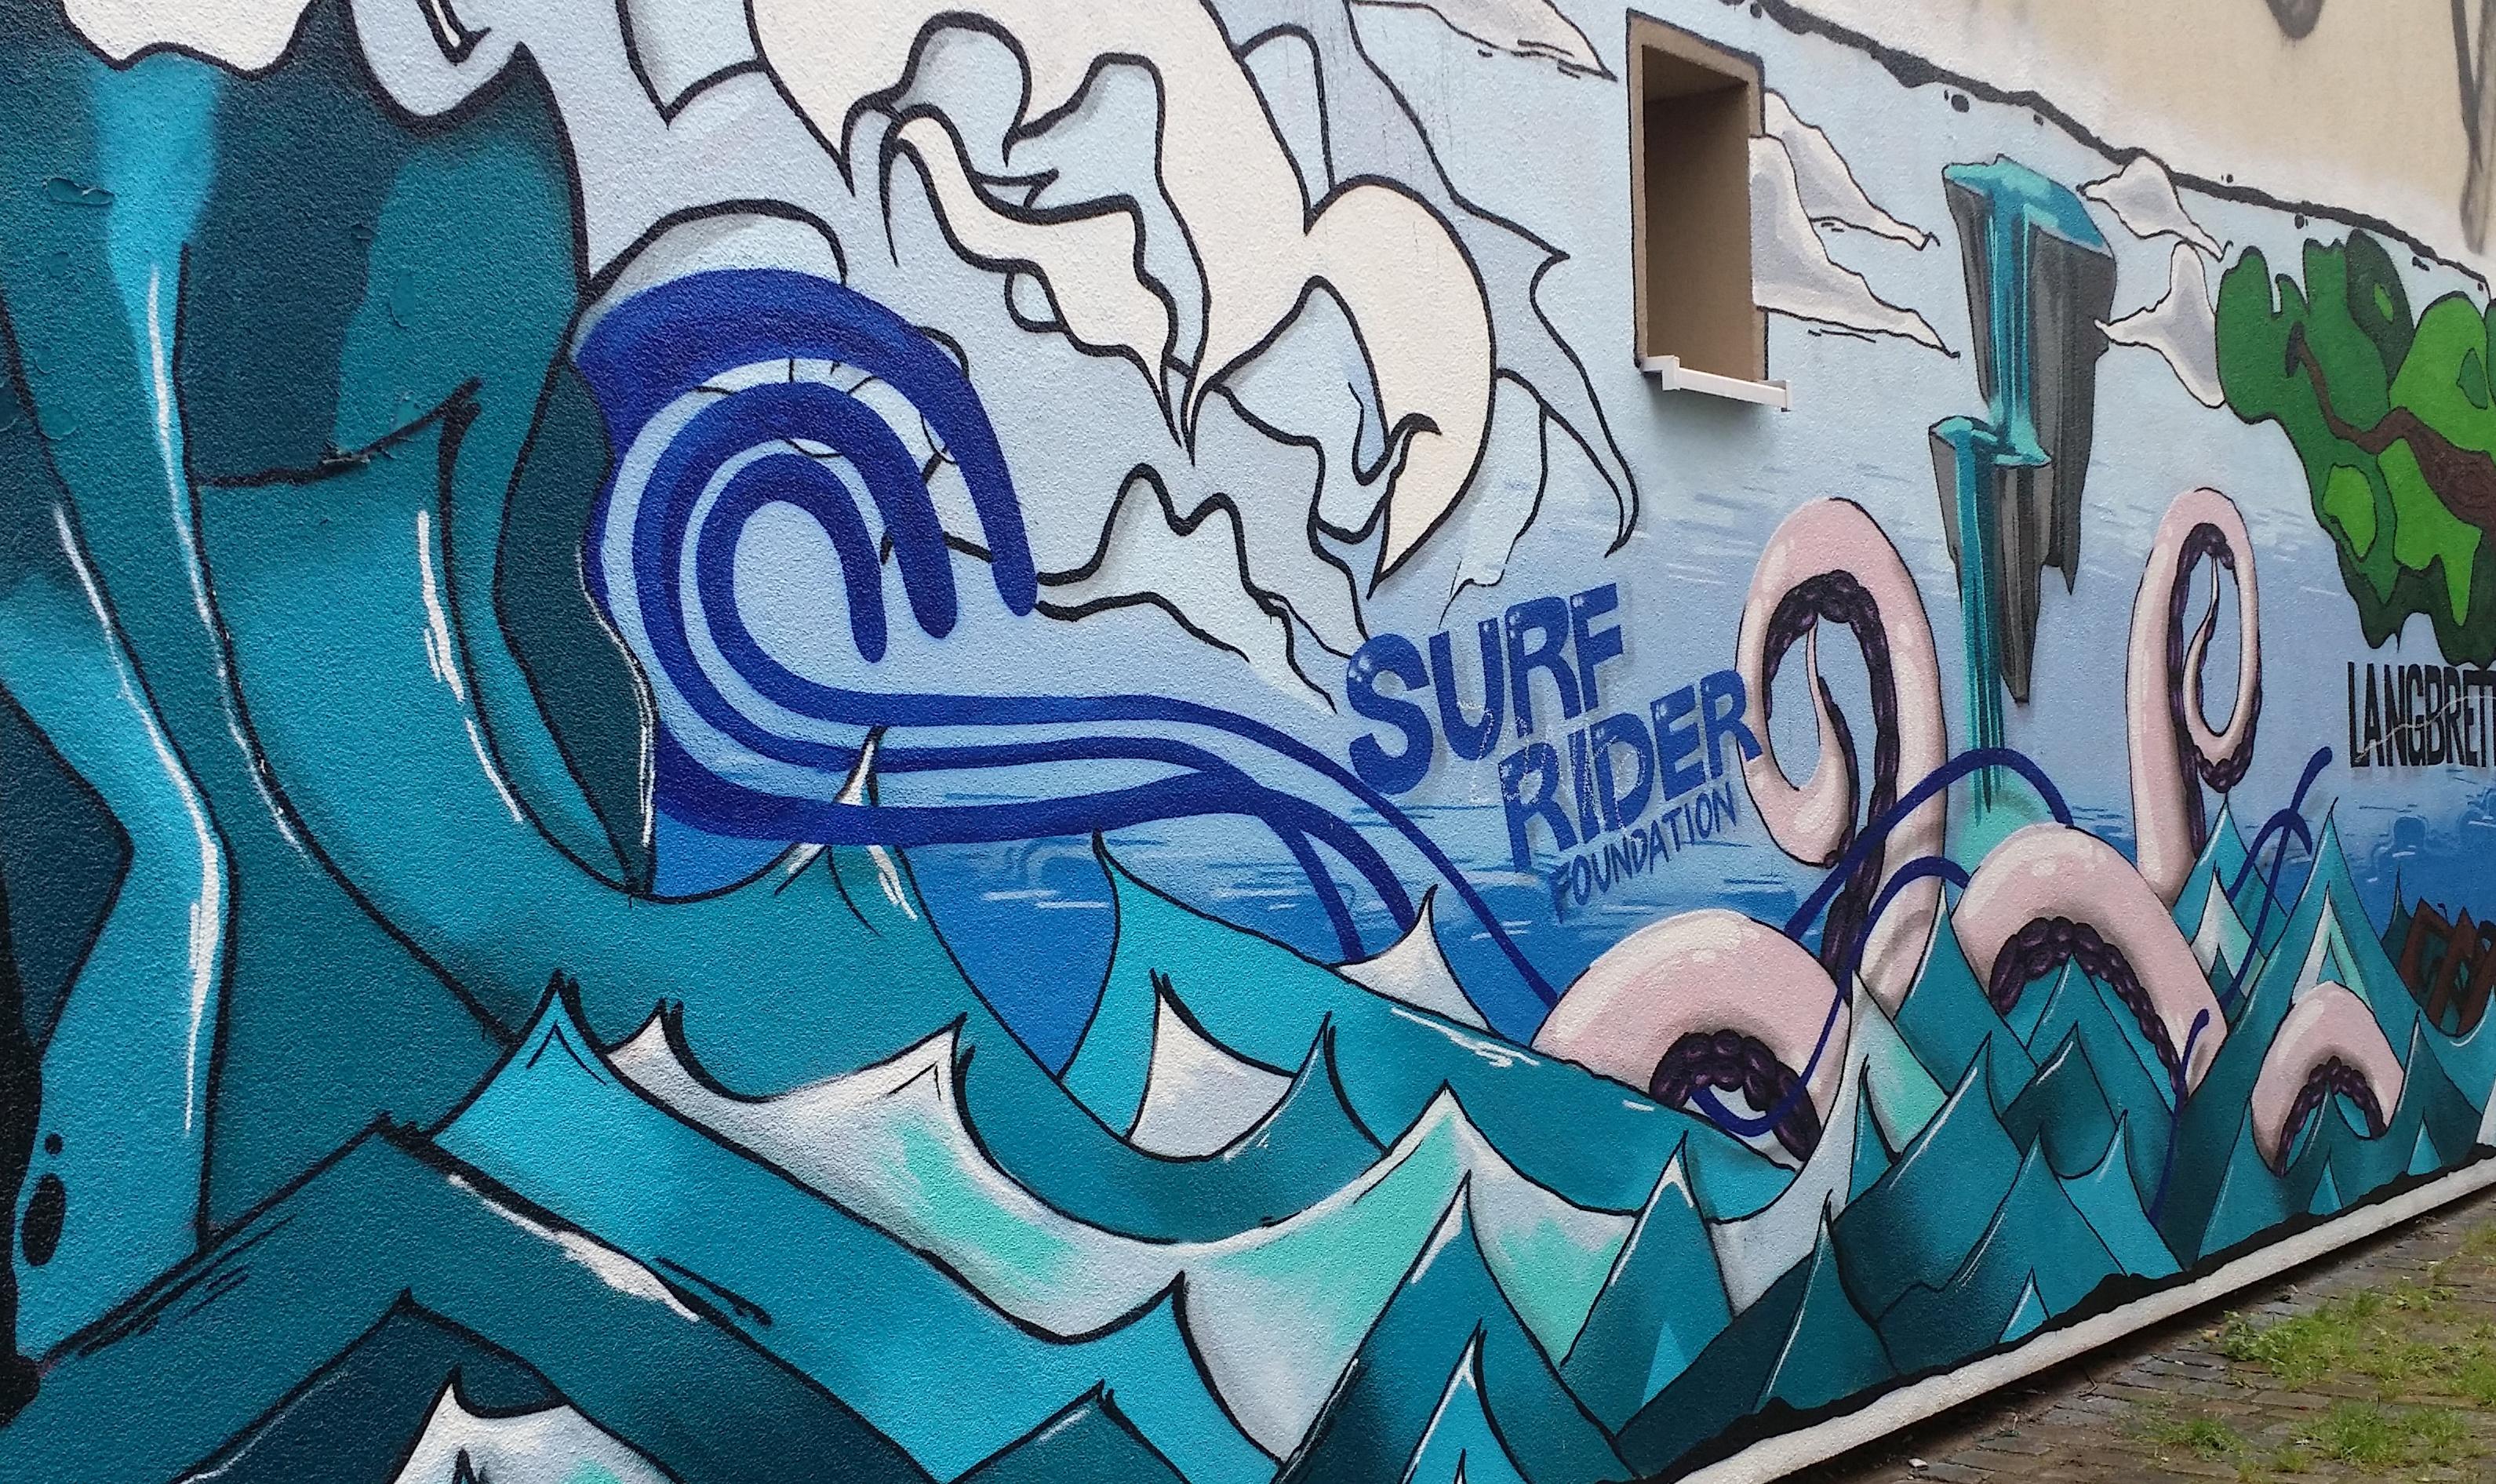 So geht #Wandgestaltung.
#Karoviertel #Hamburg #Surf #Surfriderfoundation